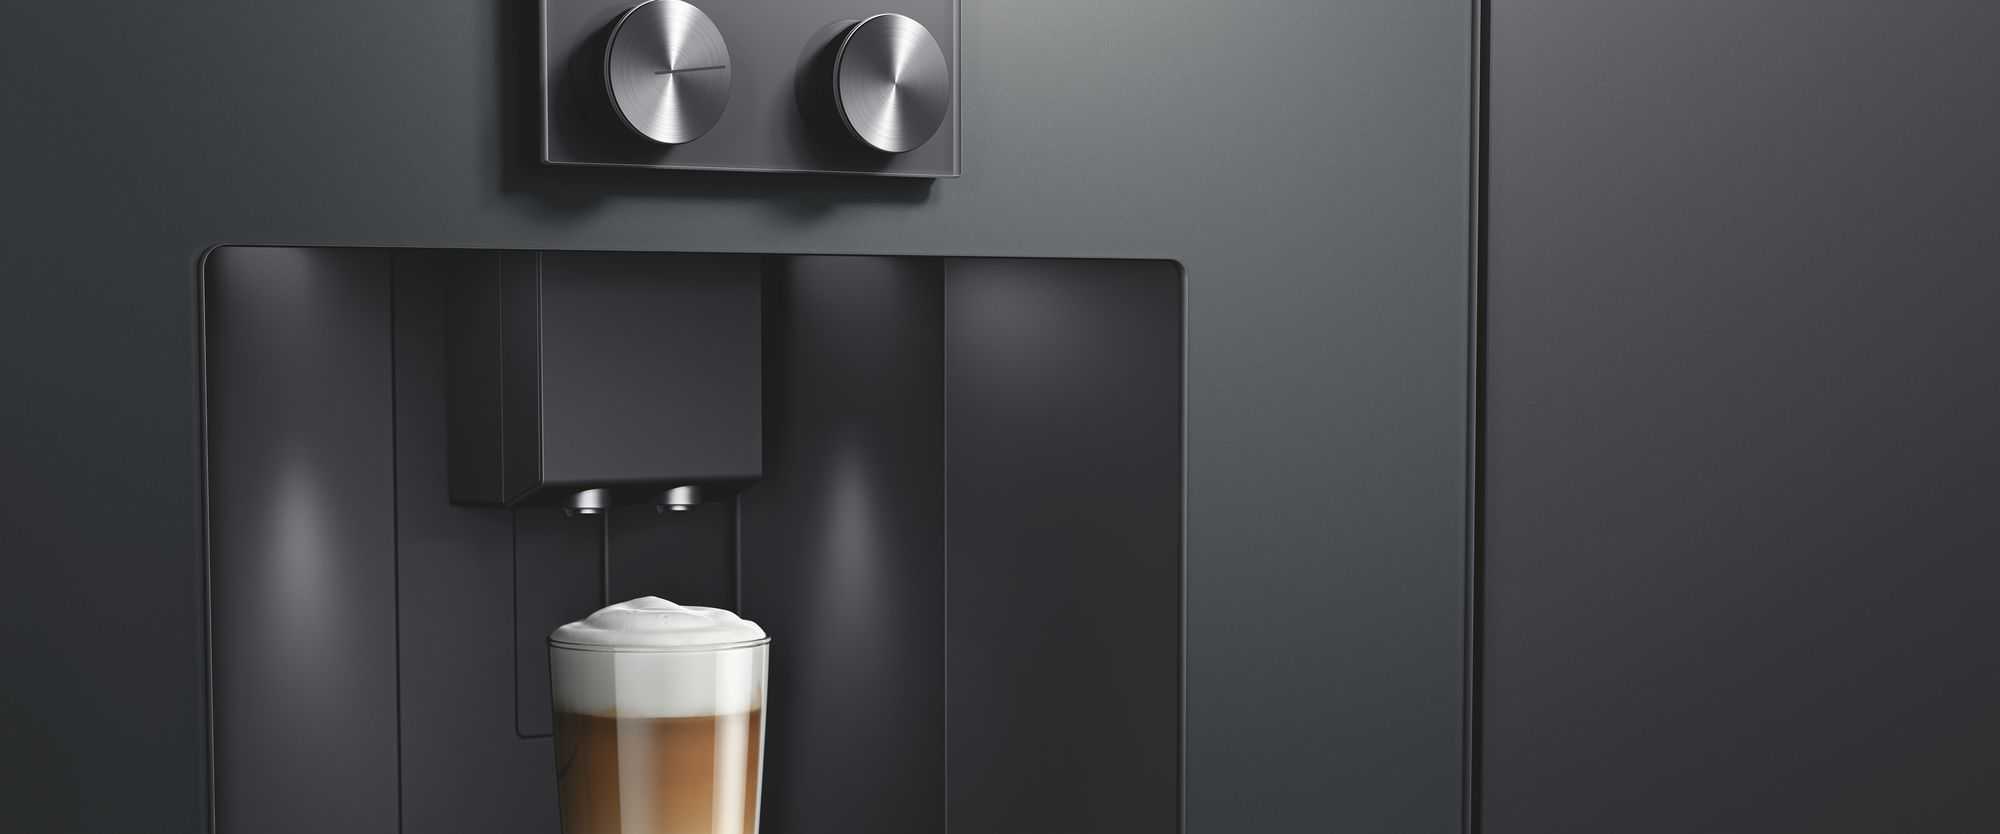 Gaggenau 400 Coffee Machines by FCI London